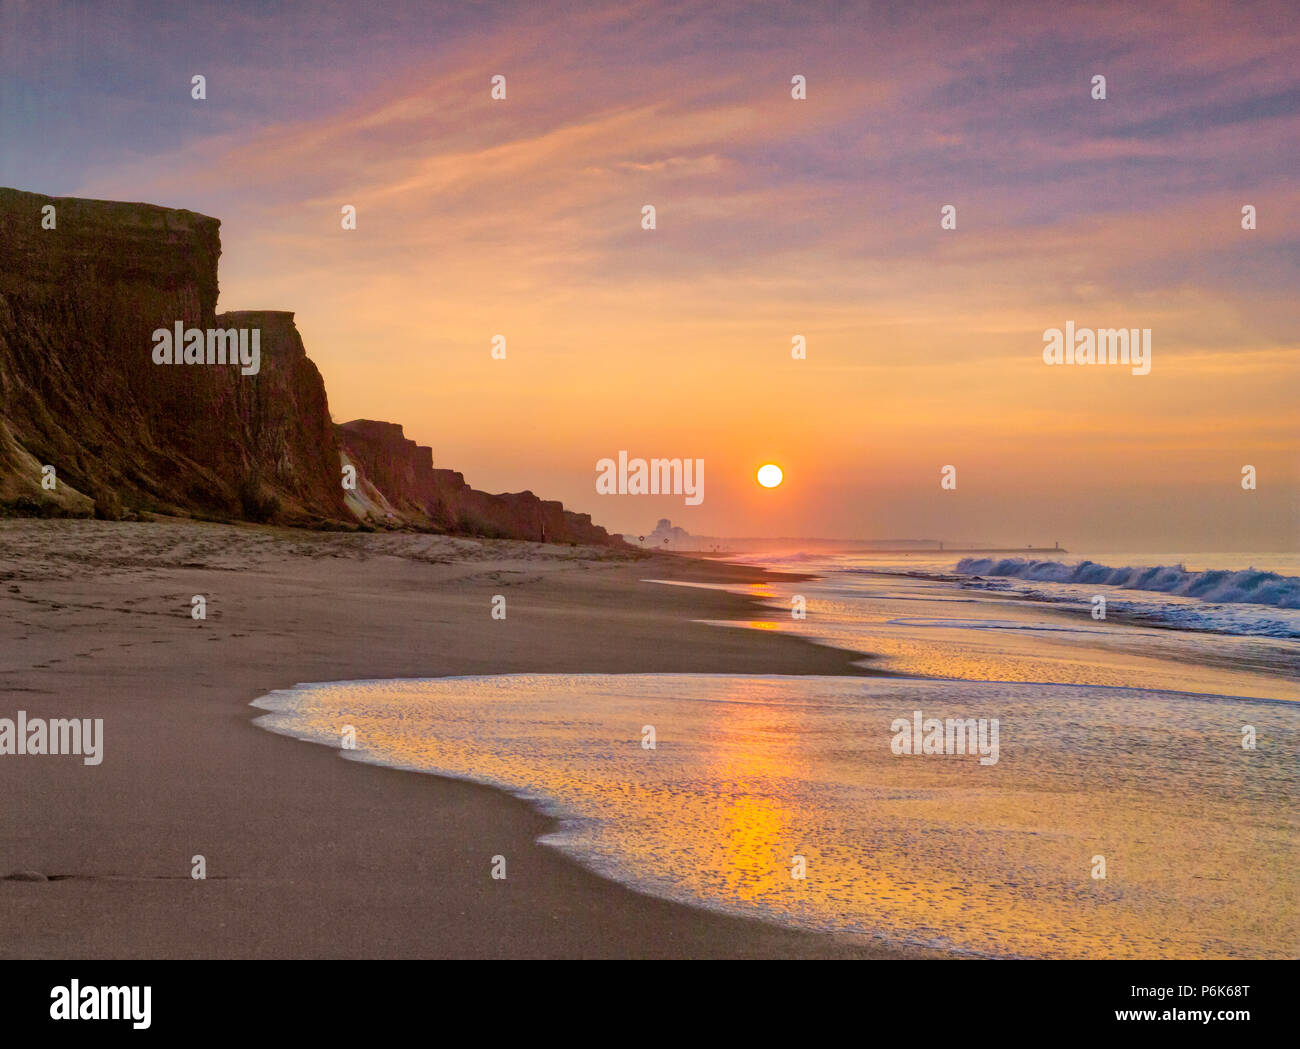 Praia da Falesia cliffs à l'aube, de l'Algarve, Portugal Banque D'Images